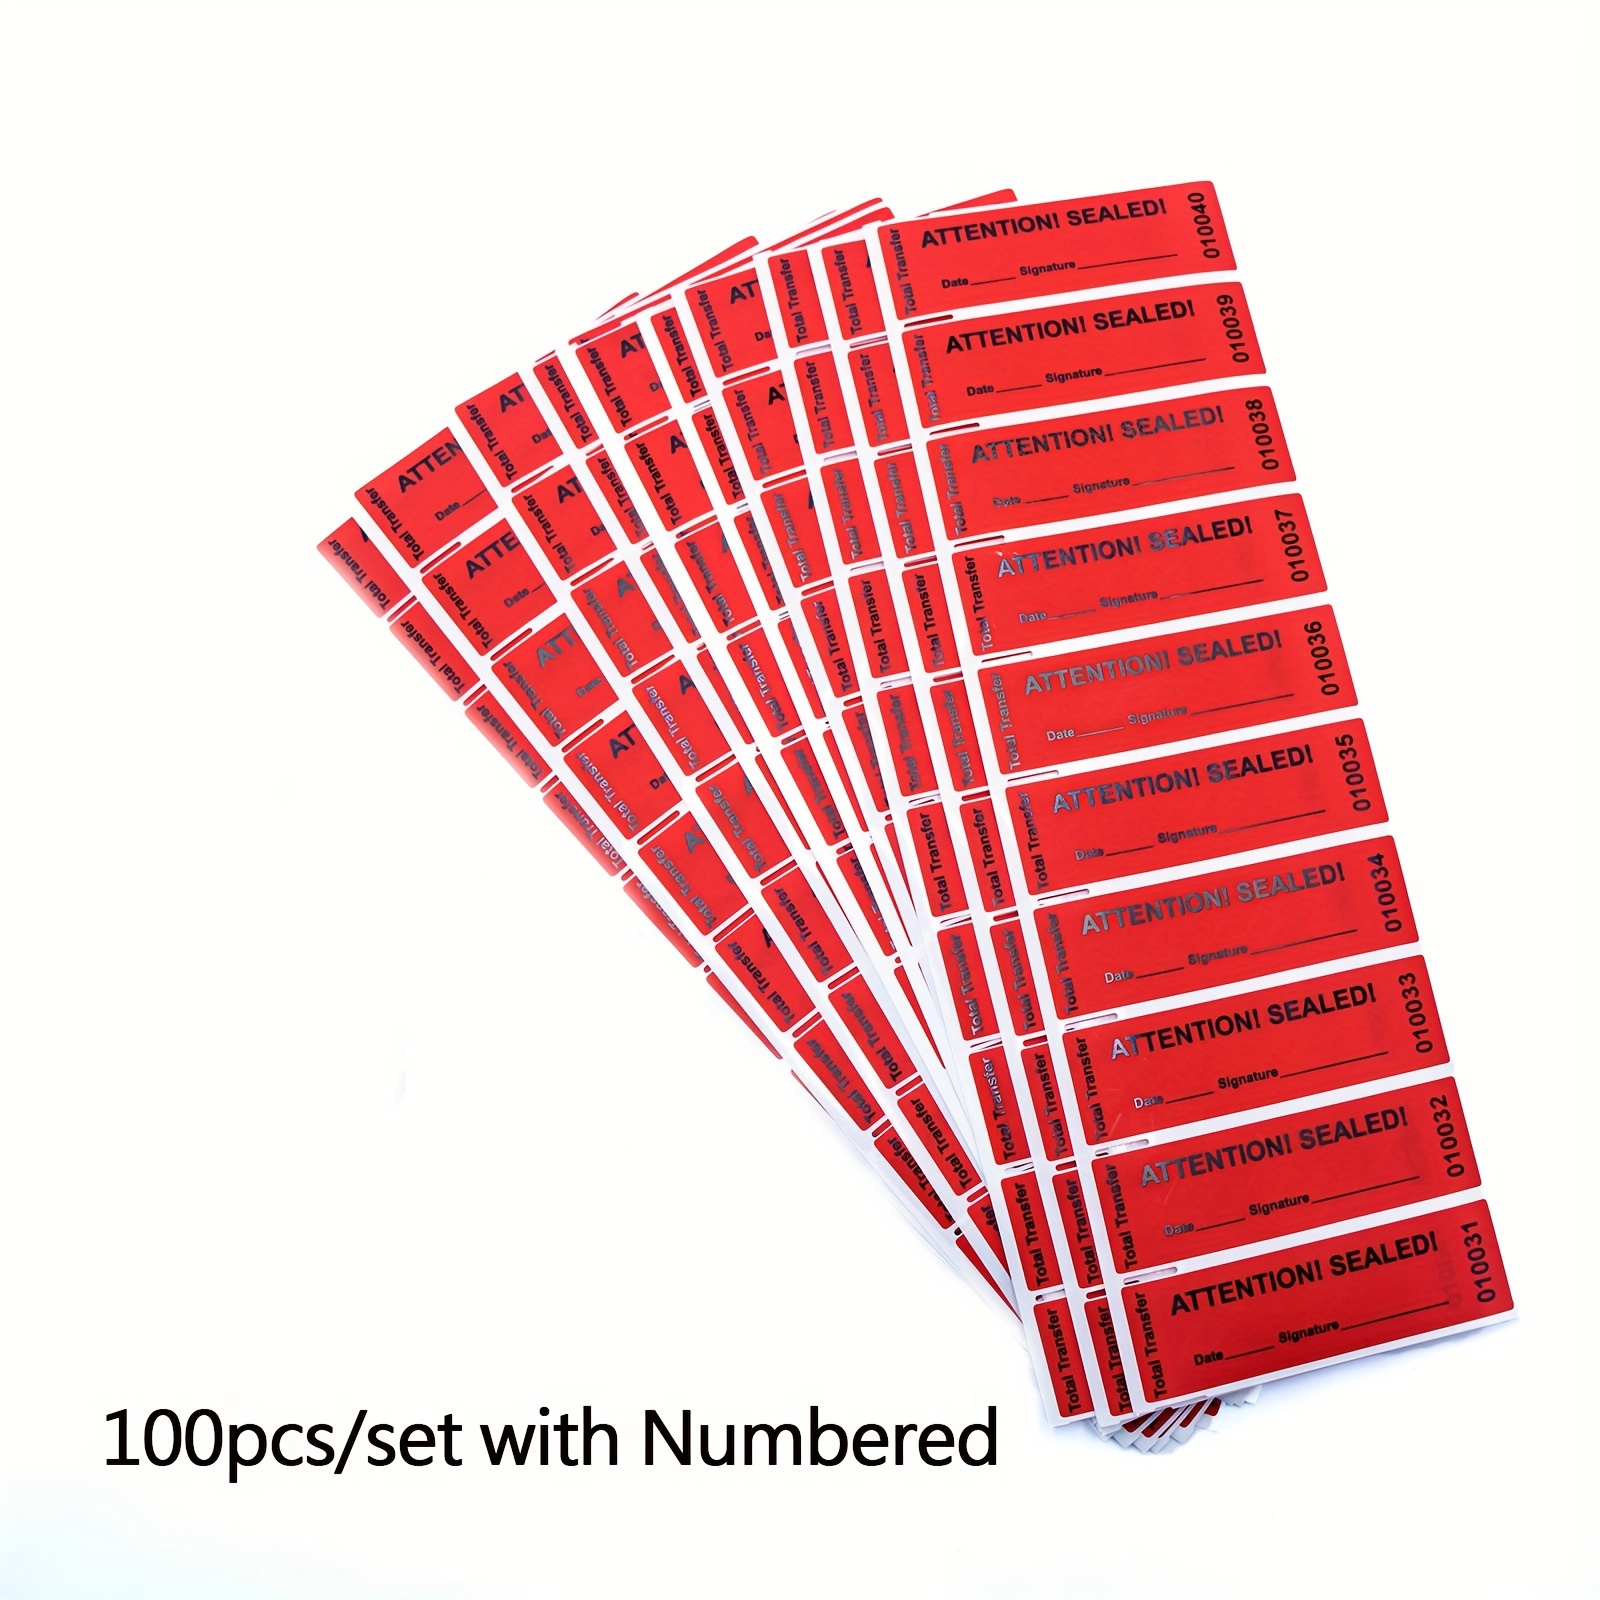  100PCS Chtep Tamper Tamper Evident Stickers, 100